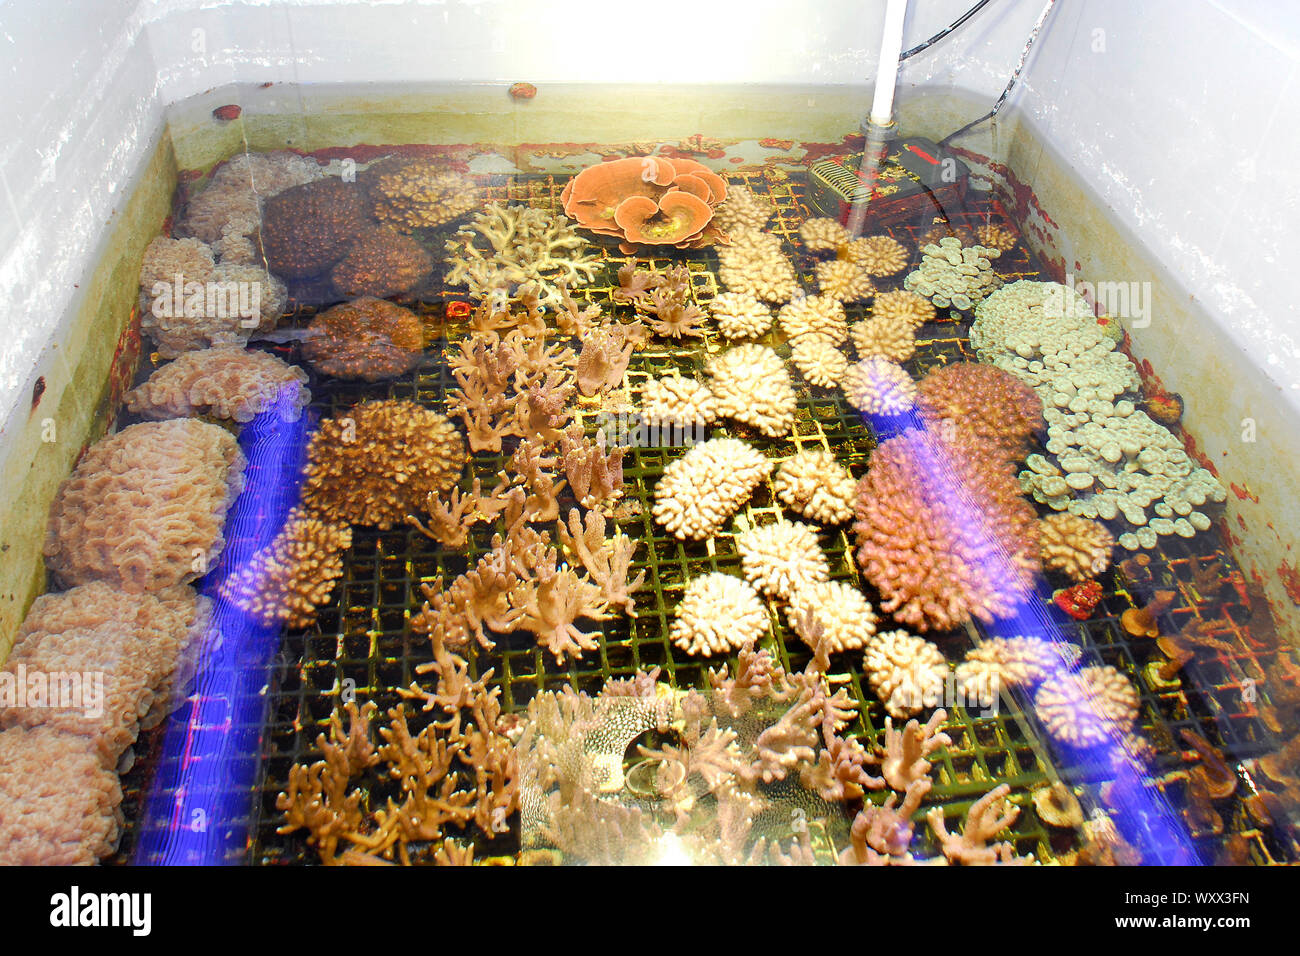 Coral propagation, Marine aquarium, Cap d'Agde, France Stock Photo